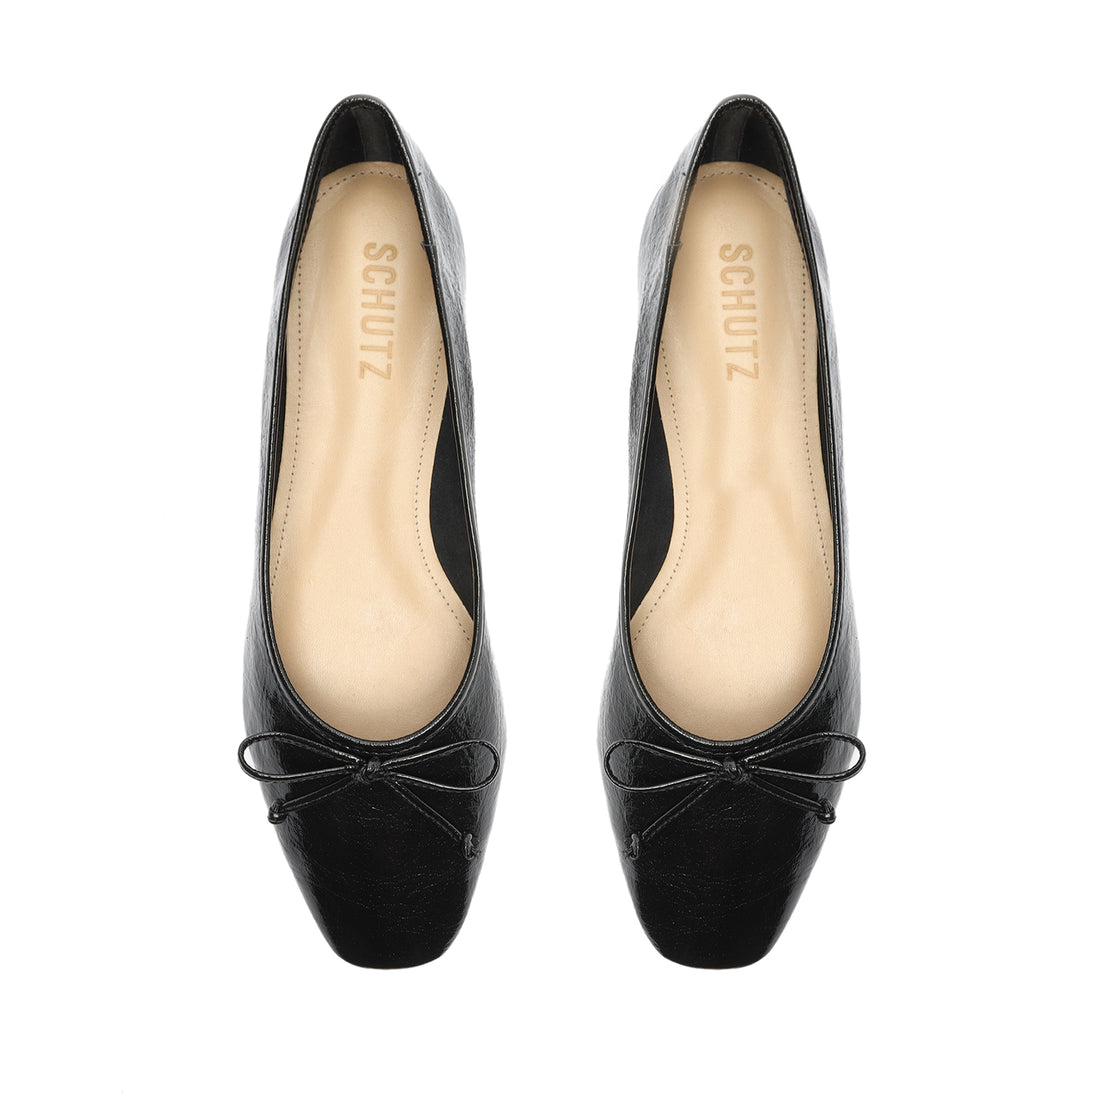 Arissa Ballet Flat with Bow Tie Detail in Leather | Schutz Shoes – SCHUTZ